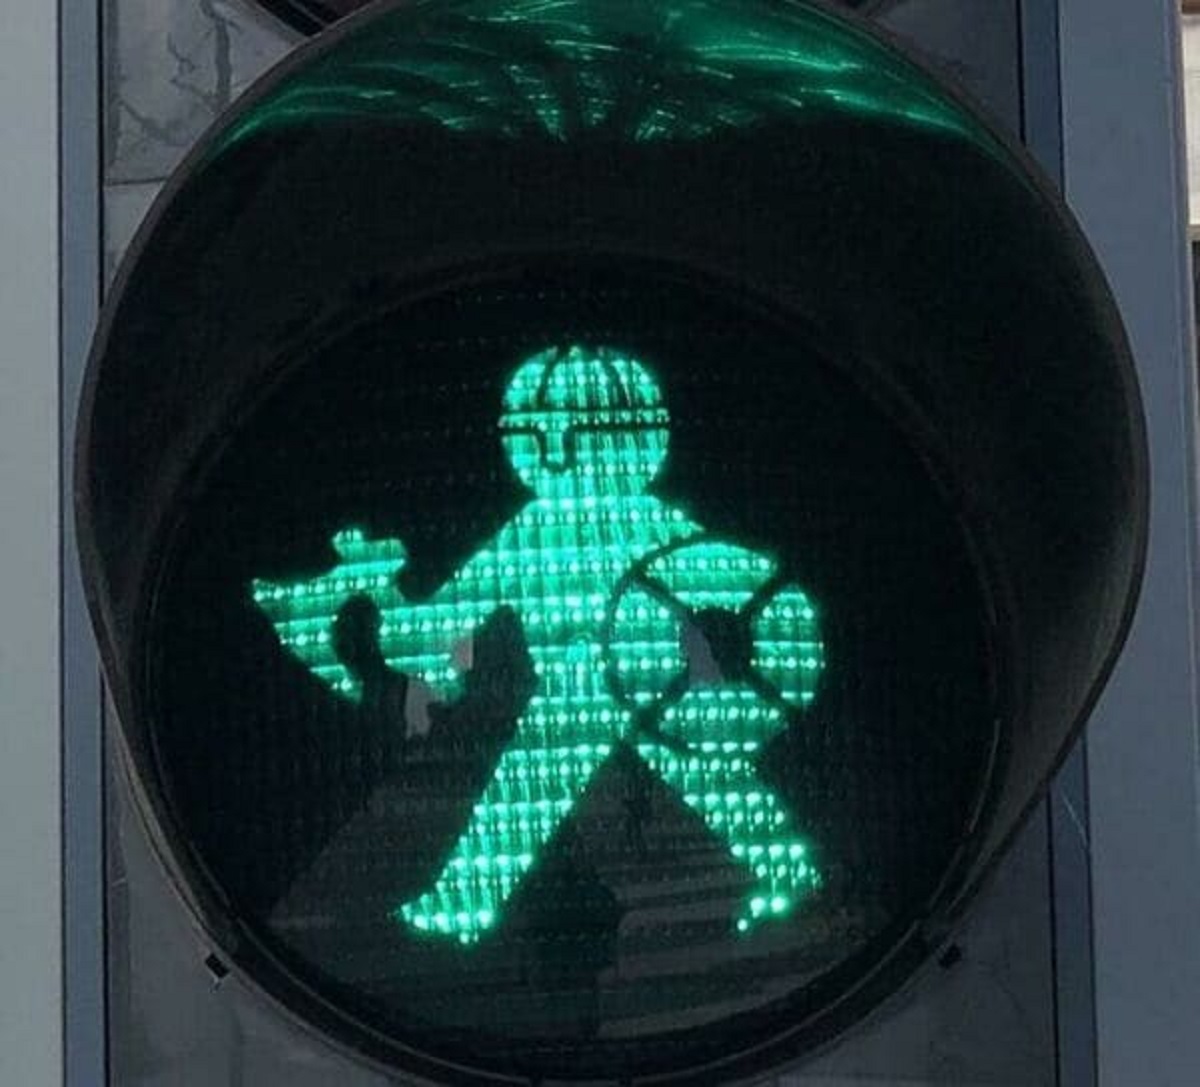 “Viking Traffic Lights In Aarhus”